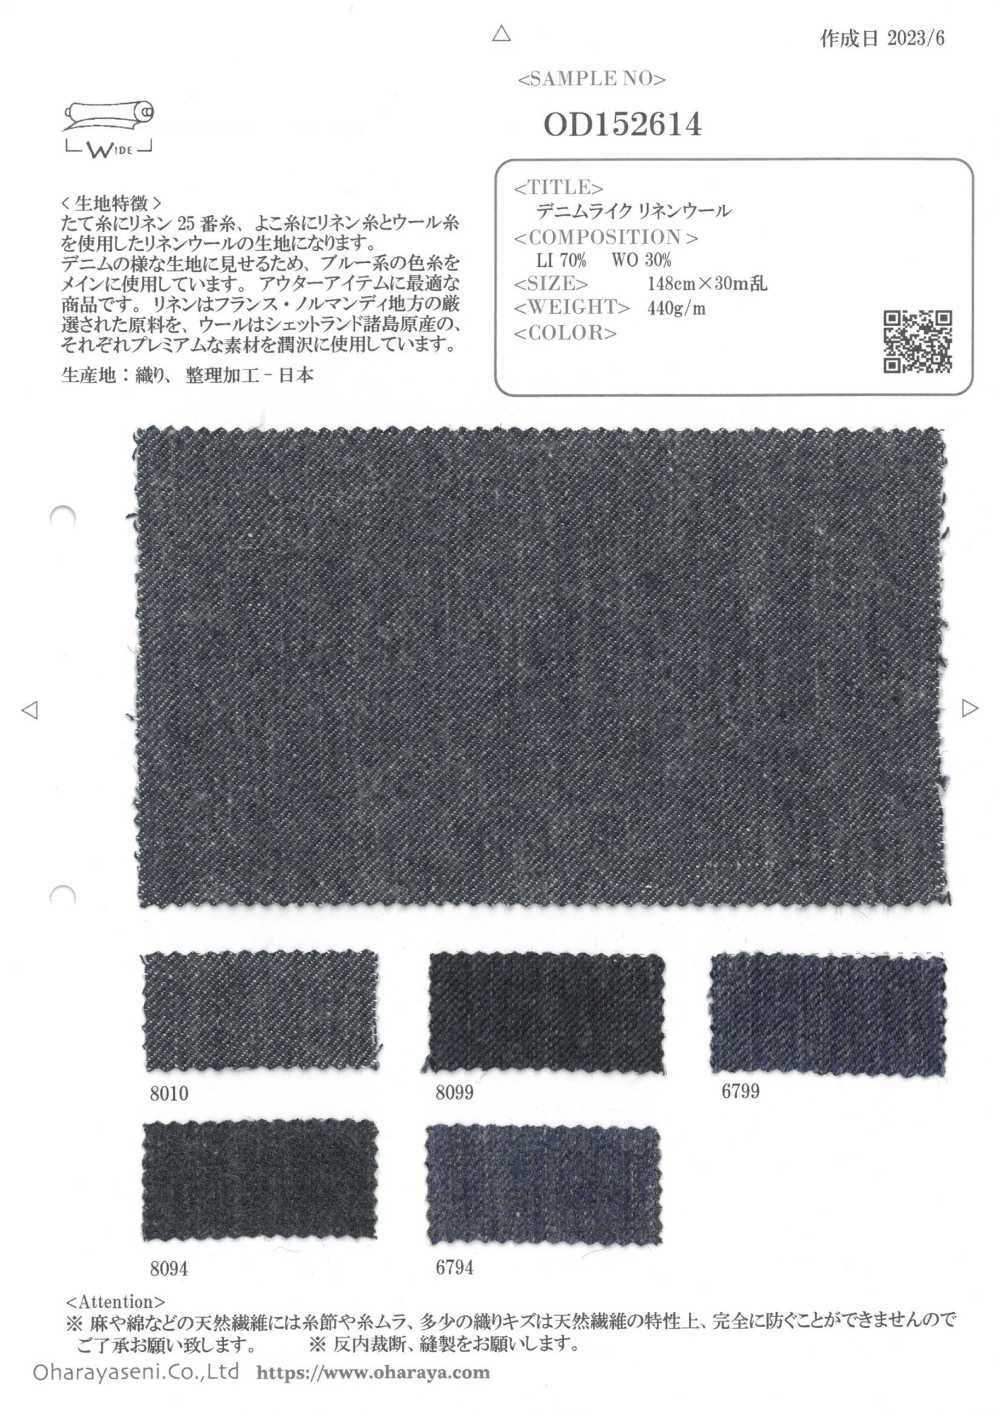 OD152614 Denimähnliche Leinenwolle[Textilgewebe] Oharayaseni